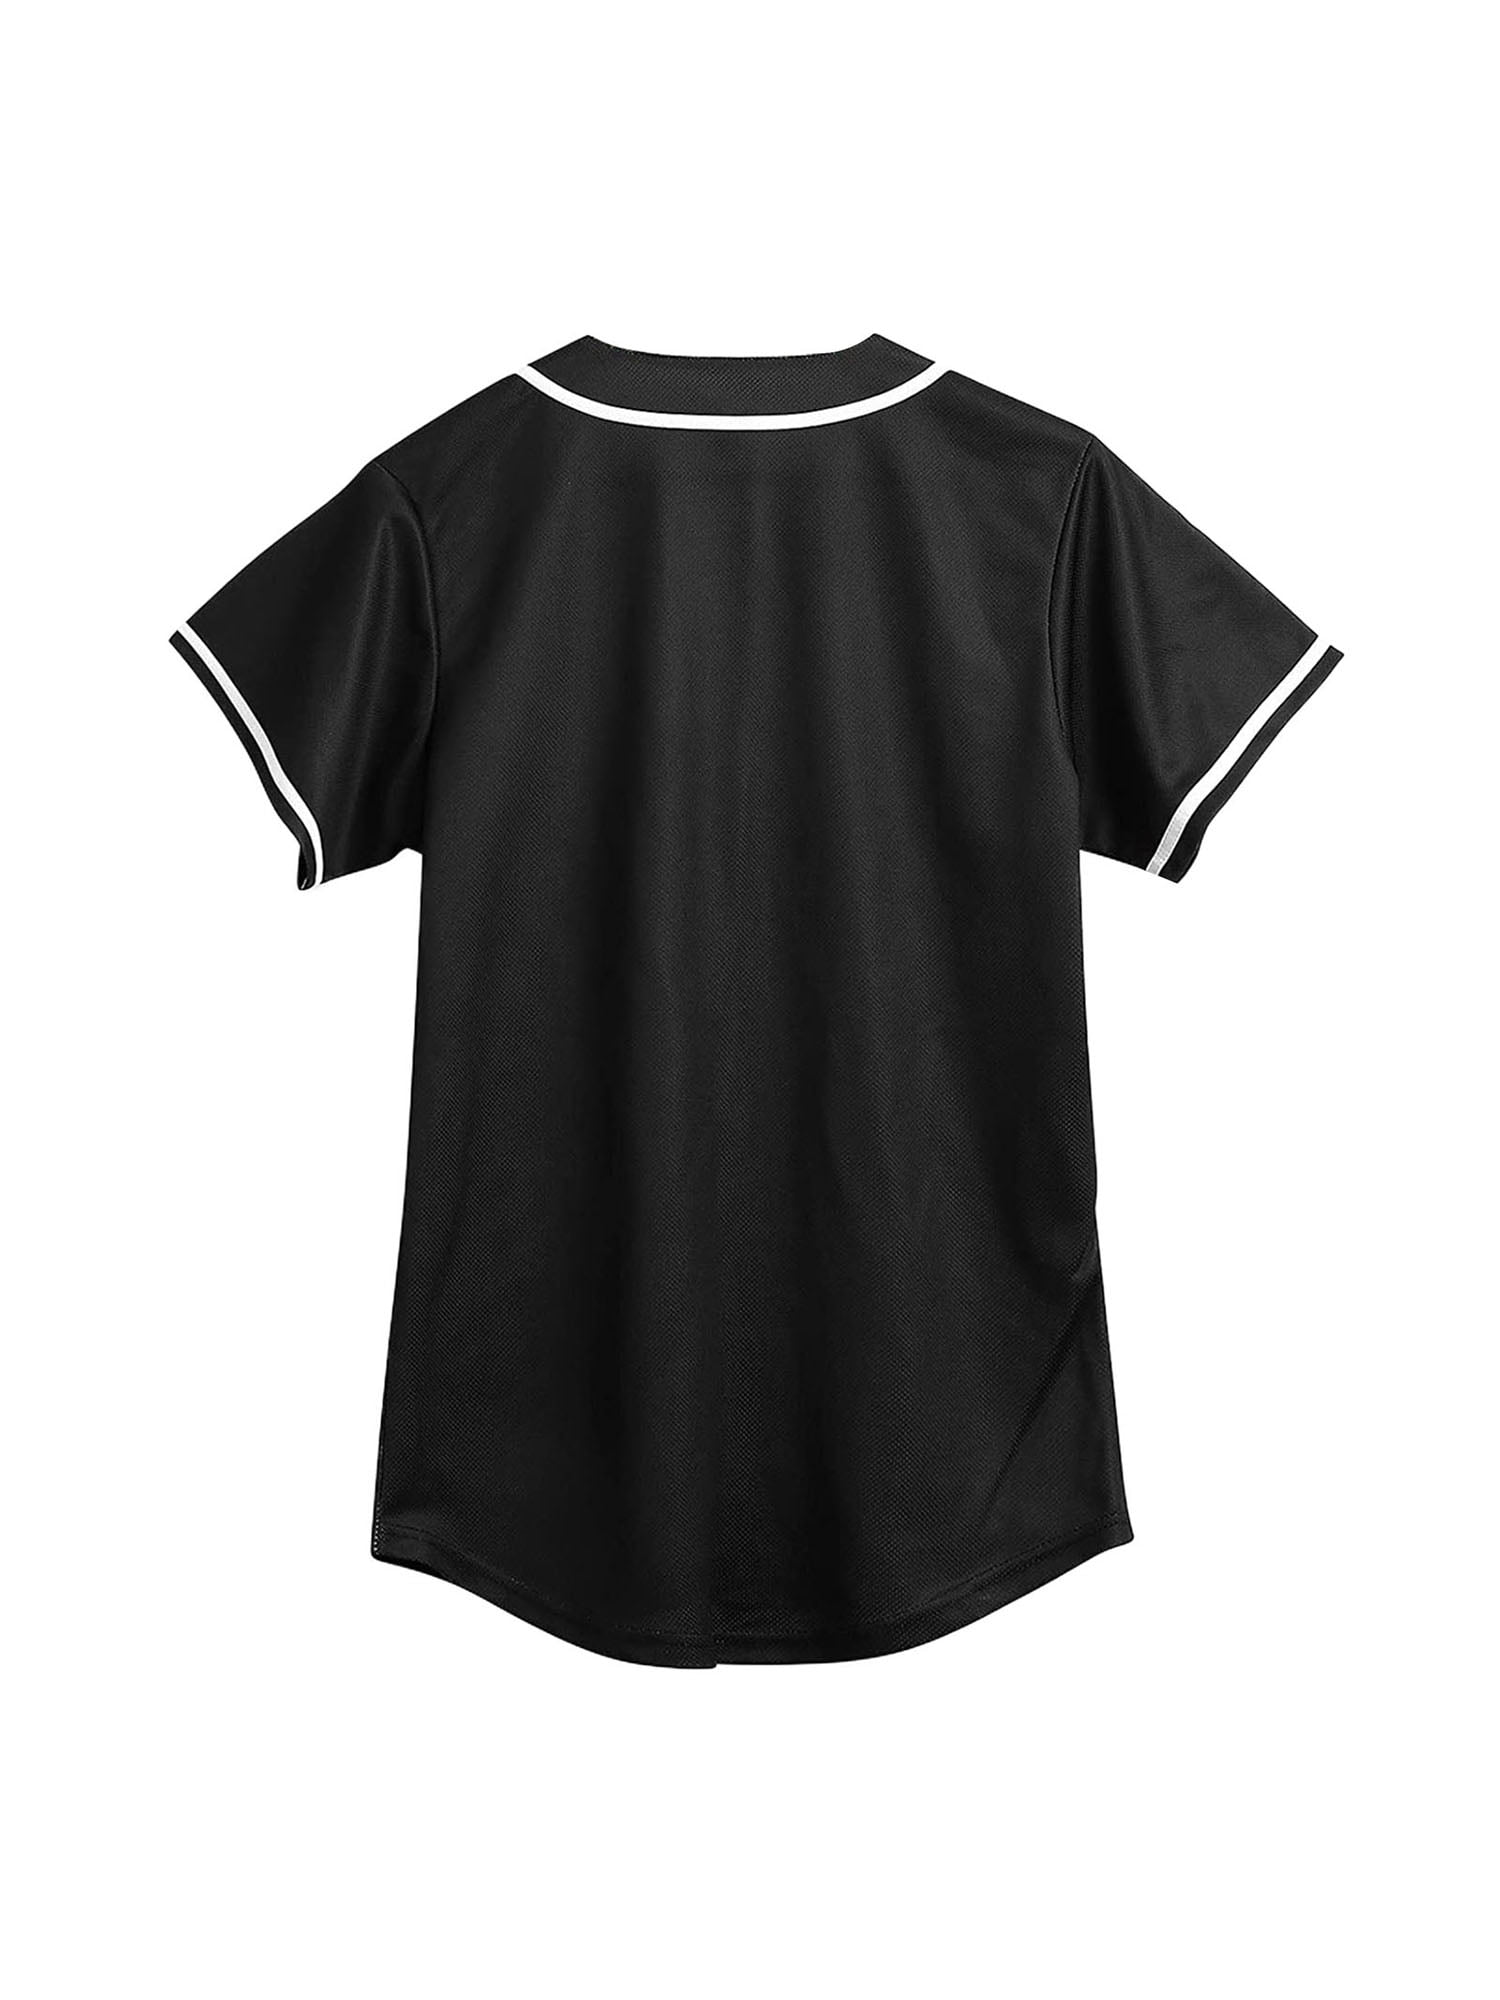 CUTHBERT 90s Outfit for Women,Bel Air Baseball Jersey Shirt for